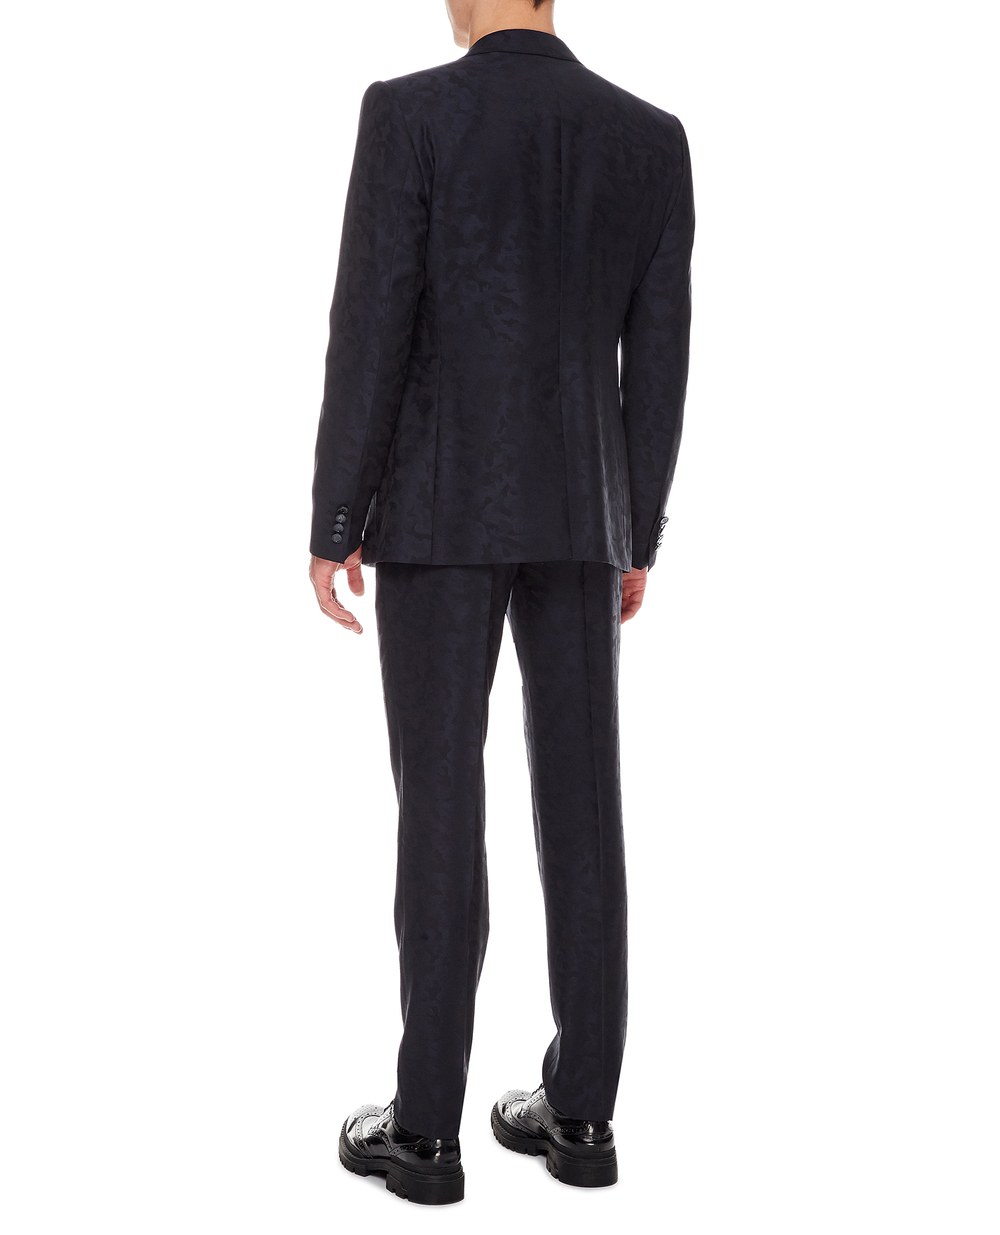 Шерстяной костюм (пиджак, жилет, брюки) Dolce&Gabbana GKEJMT-FJ2B4, черный цвет • Купить в интернет-магазине Kameron